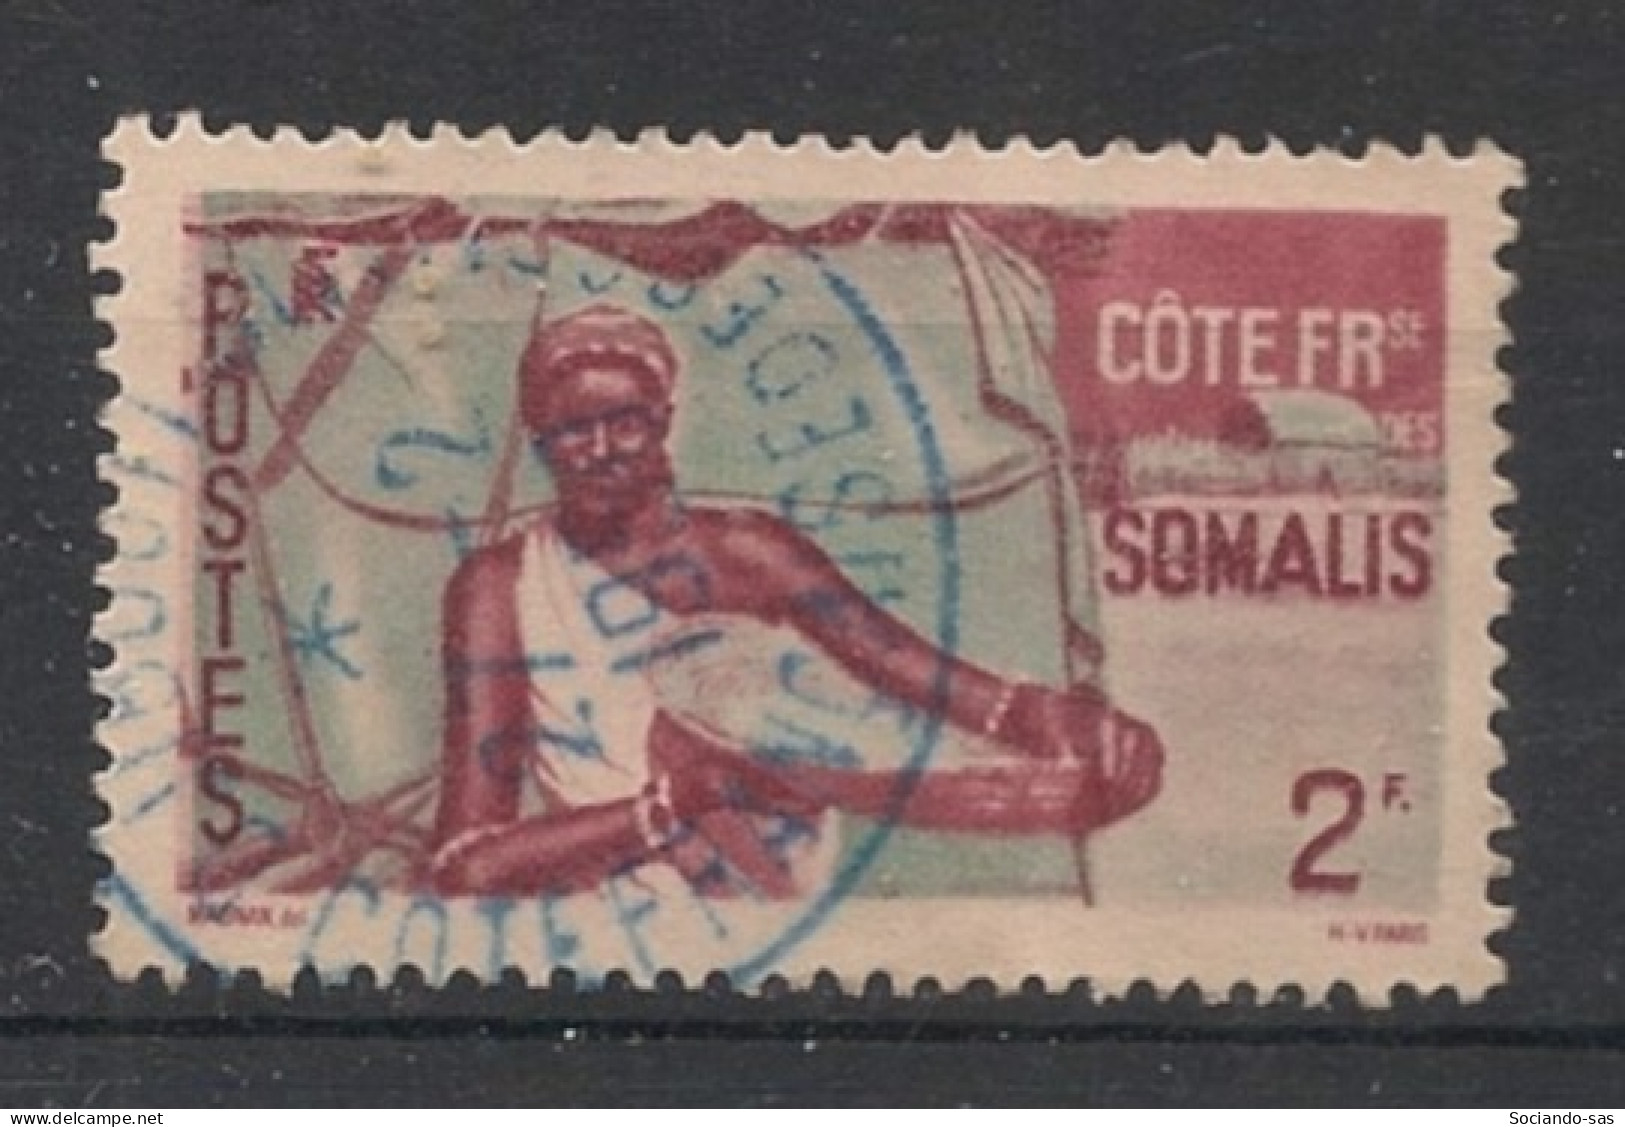 COTE DES SOMALIS - 1947 - N°YT. 273 - Femme Somali 2f - Oblitéré / Used - Used Stamps